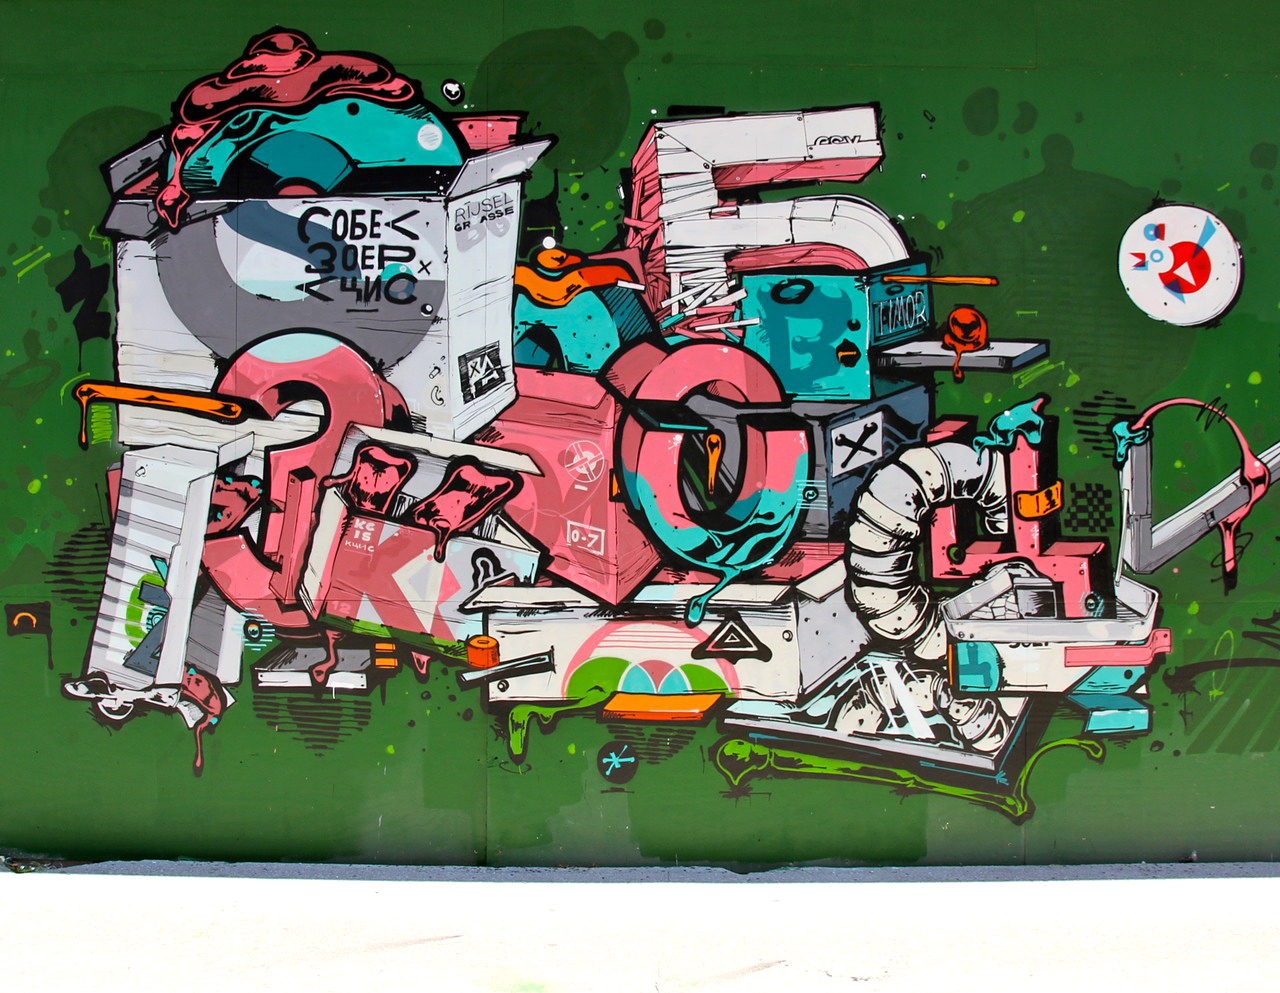 SOBEK, KCIS, ZOER, Denmark, graffiti, Ironlak